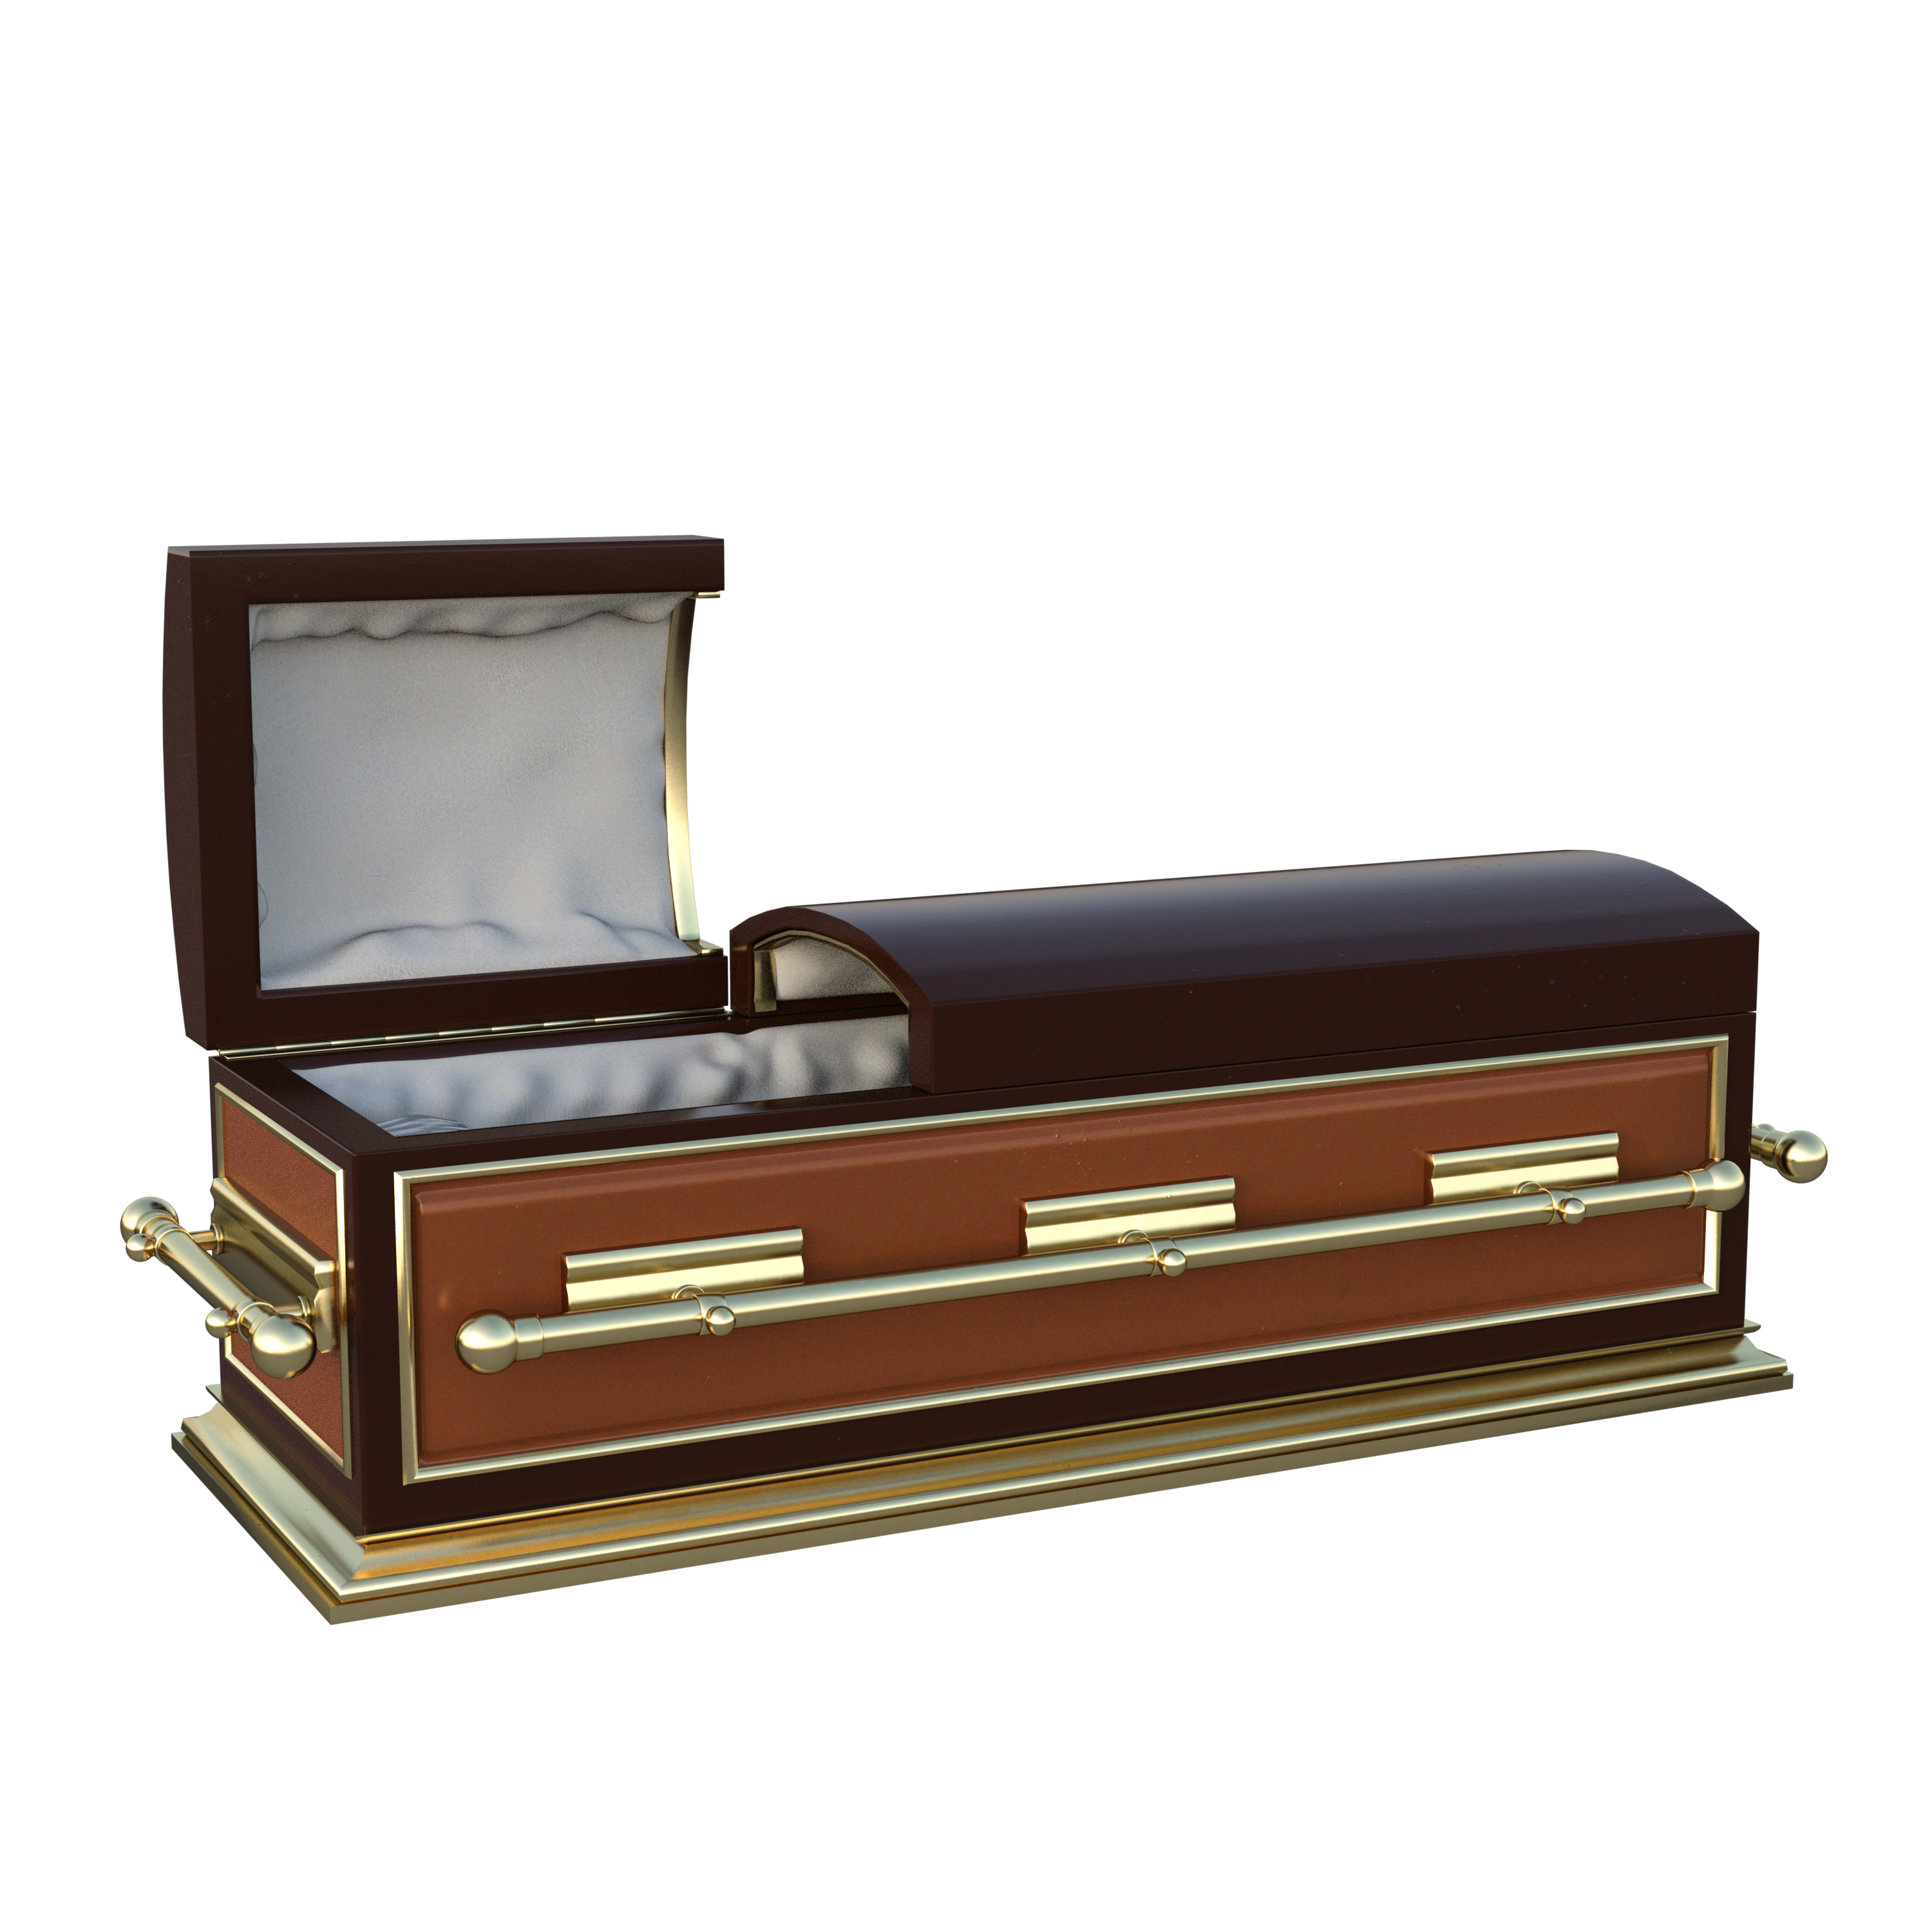 Тафофобия: как избавиться от страха похорон и боязни быть погребенным заживо